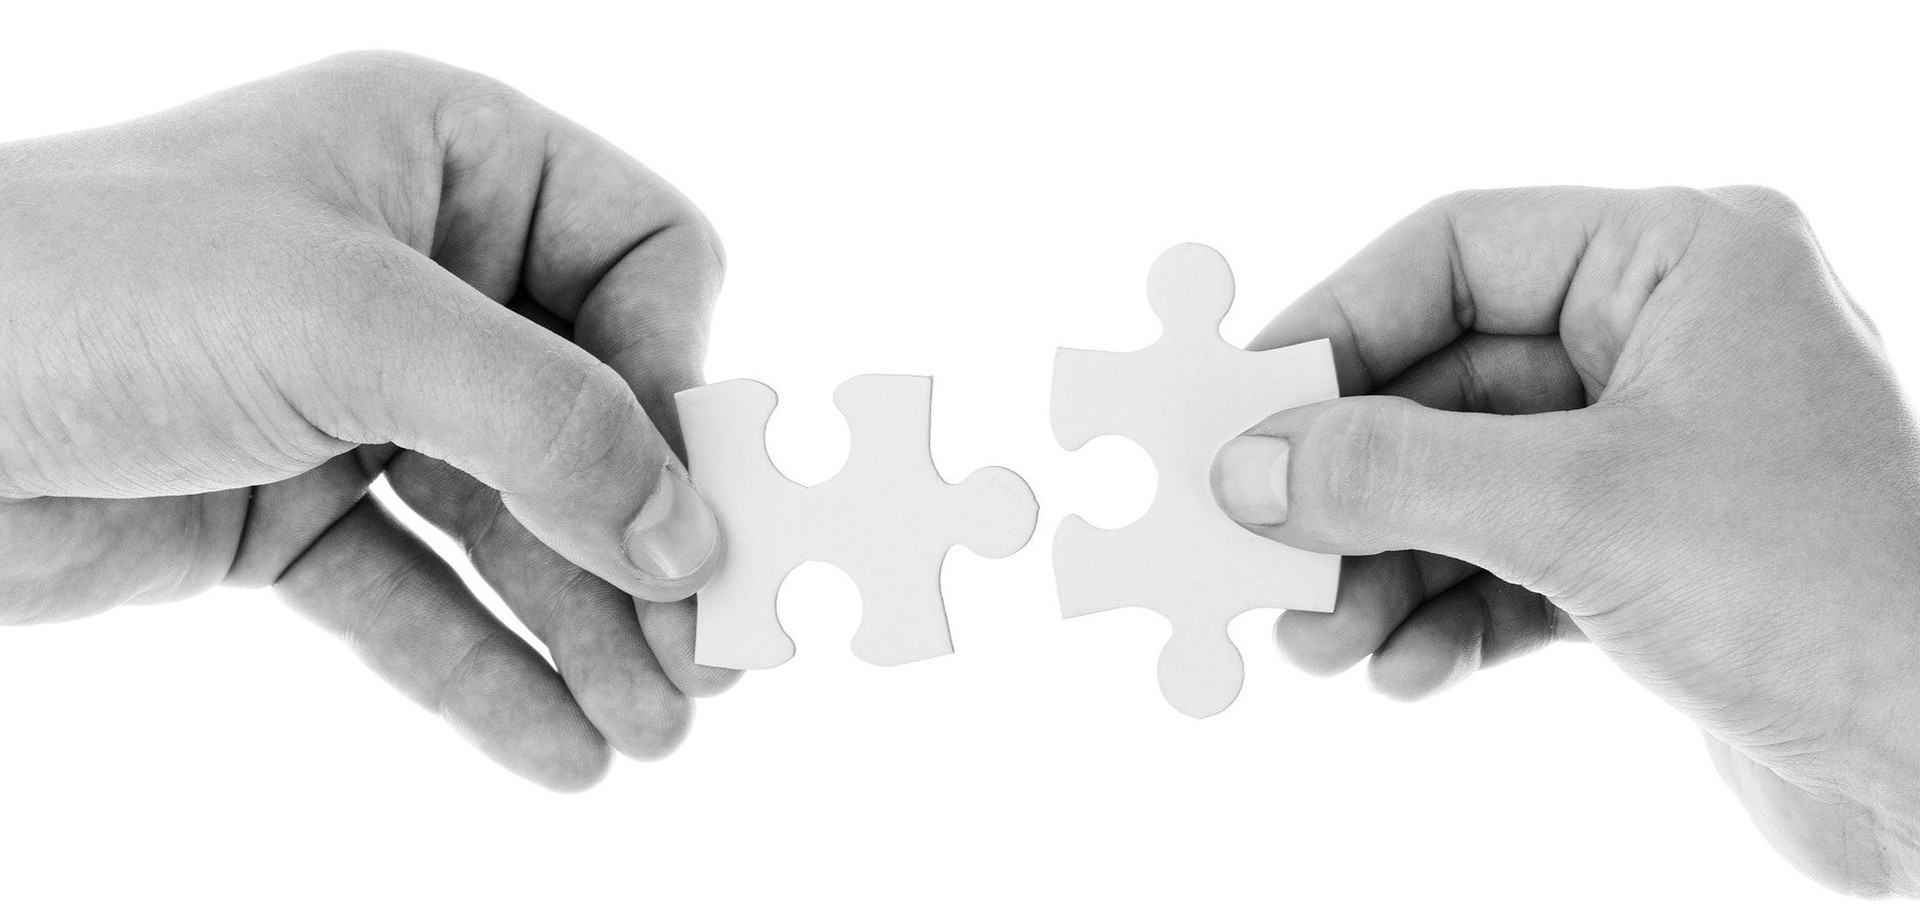 Zwei Hände versuchen zwei Puzzleteile zusammenzufügen. Dies ist ein kosten- und lizenzfreies Foto von pixabay.
©pixabay.com